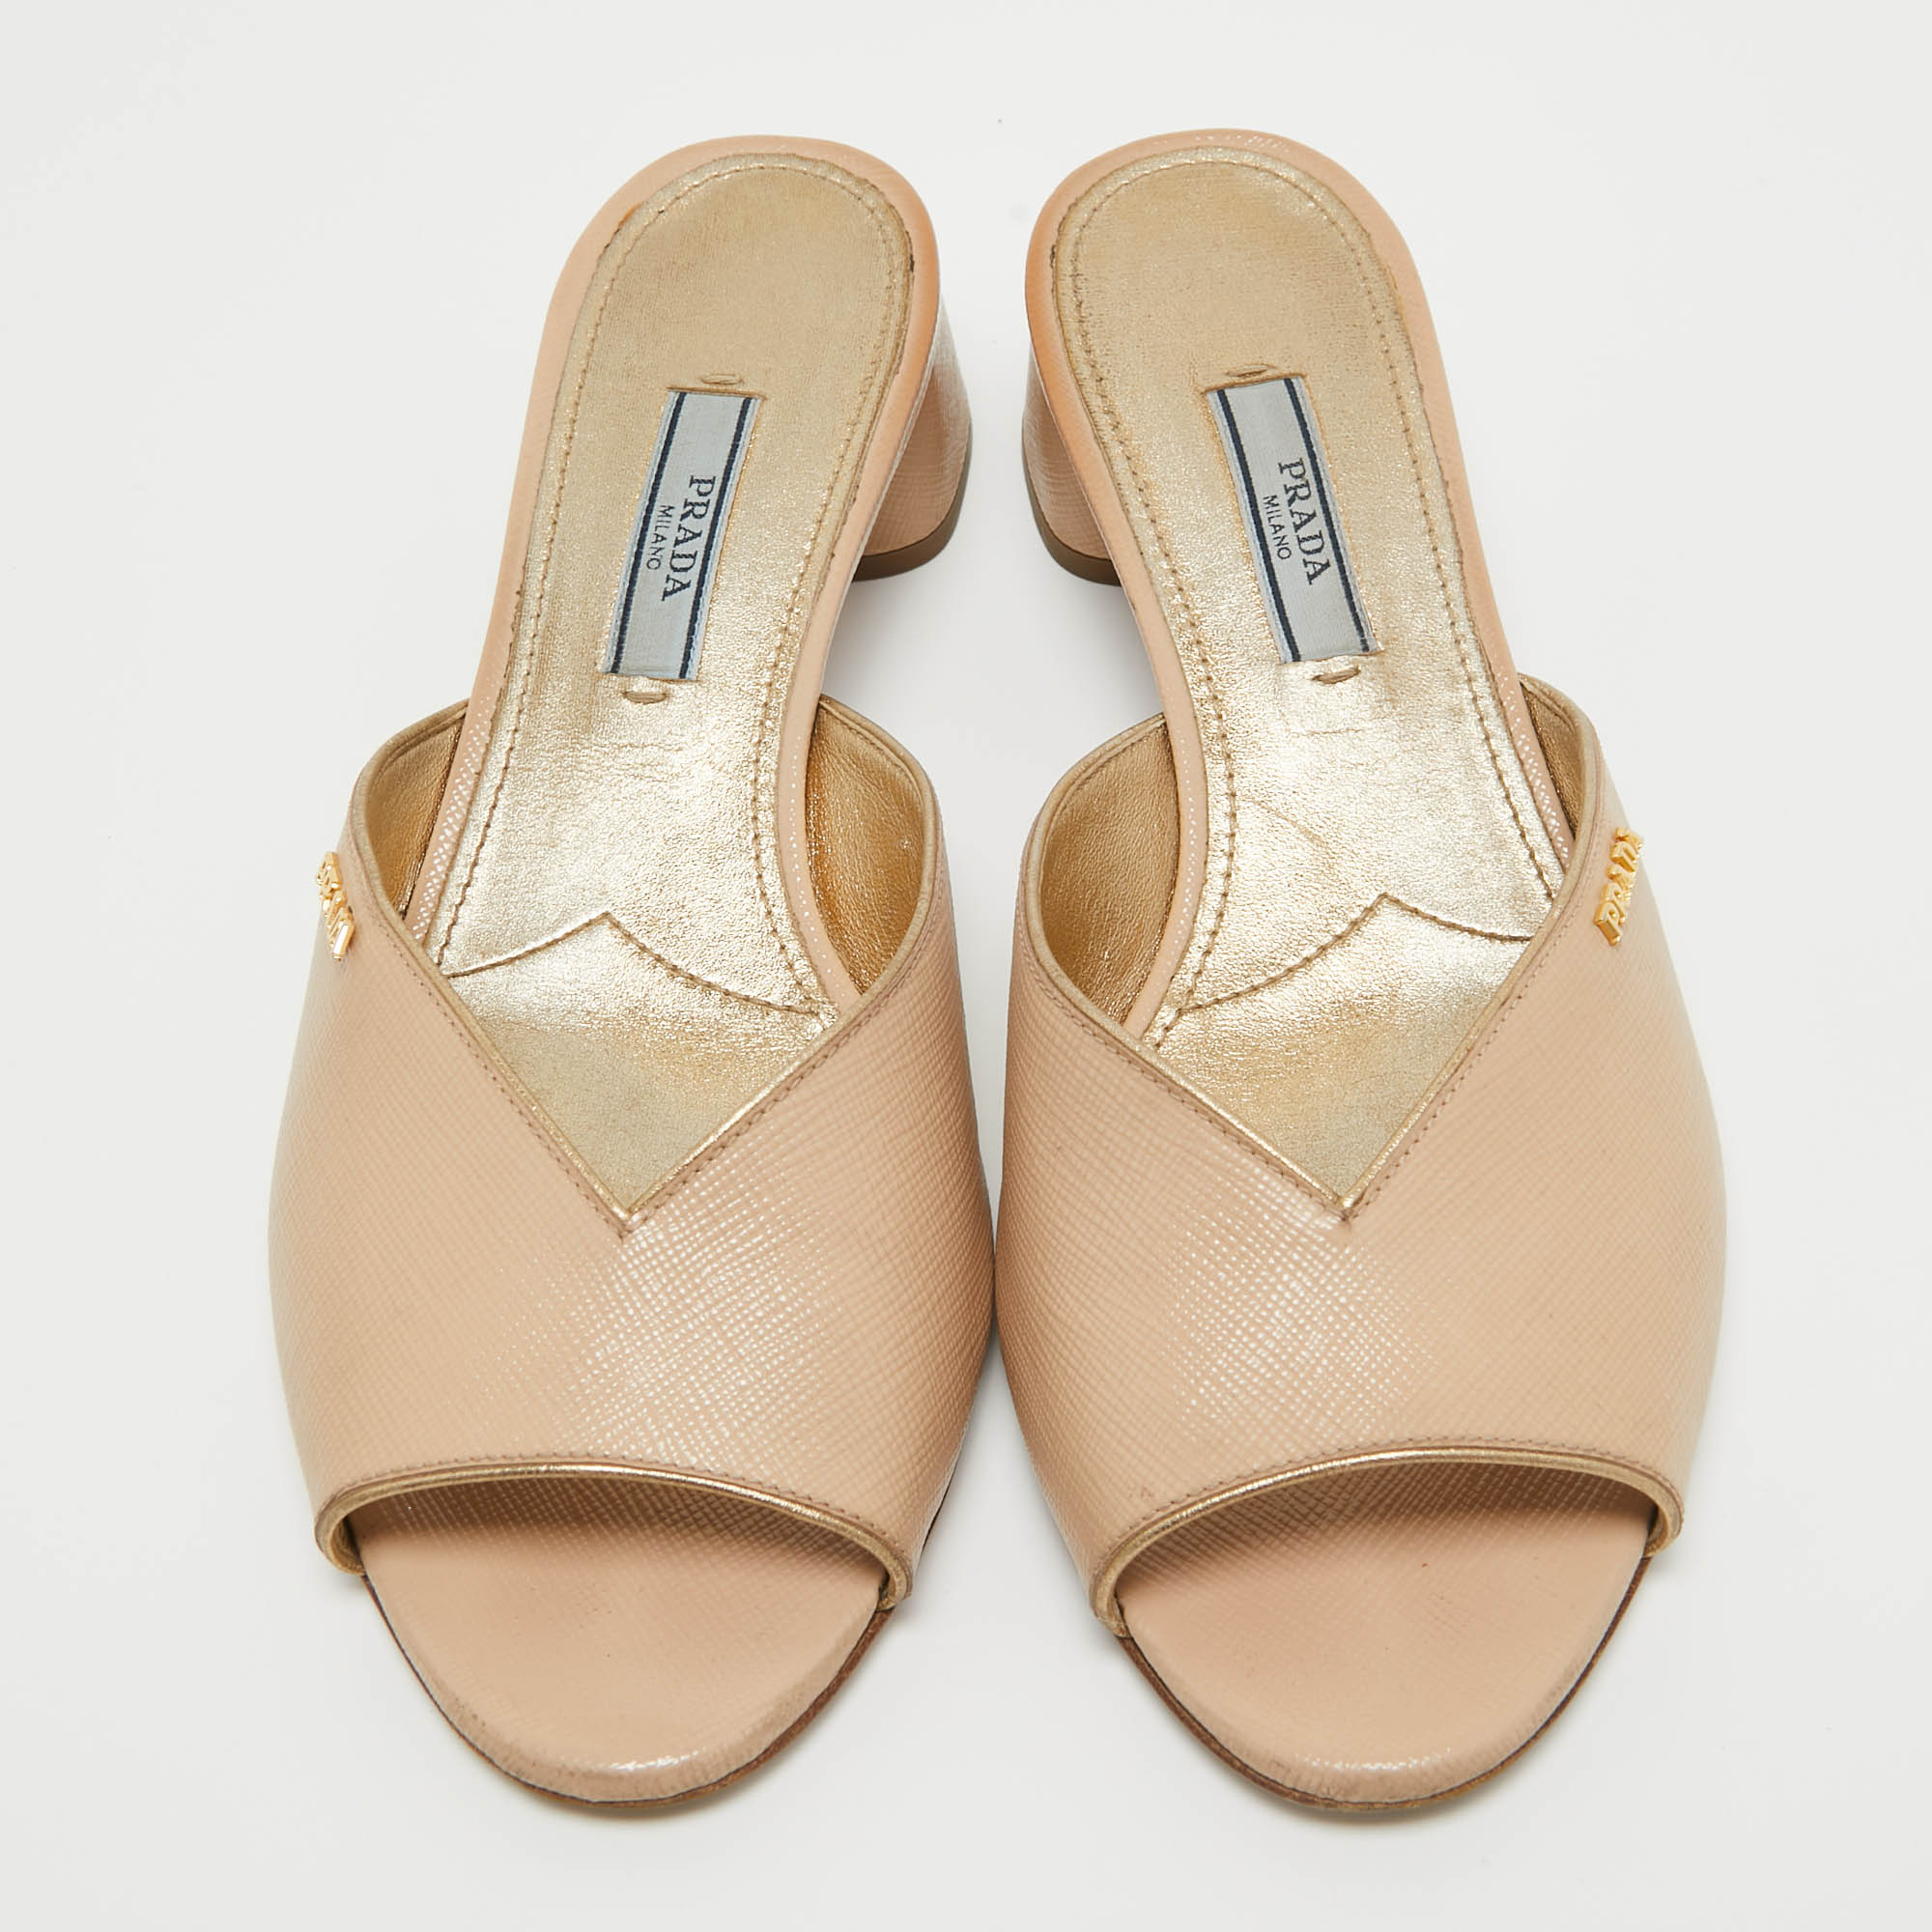 Prada Beige Patent Leather Open Toe Block Heel Slide Sandals Size 37